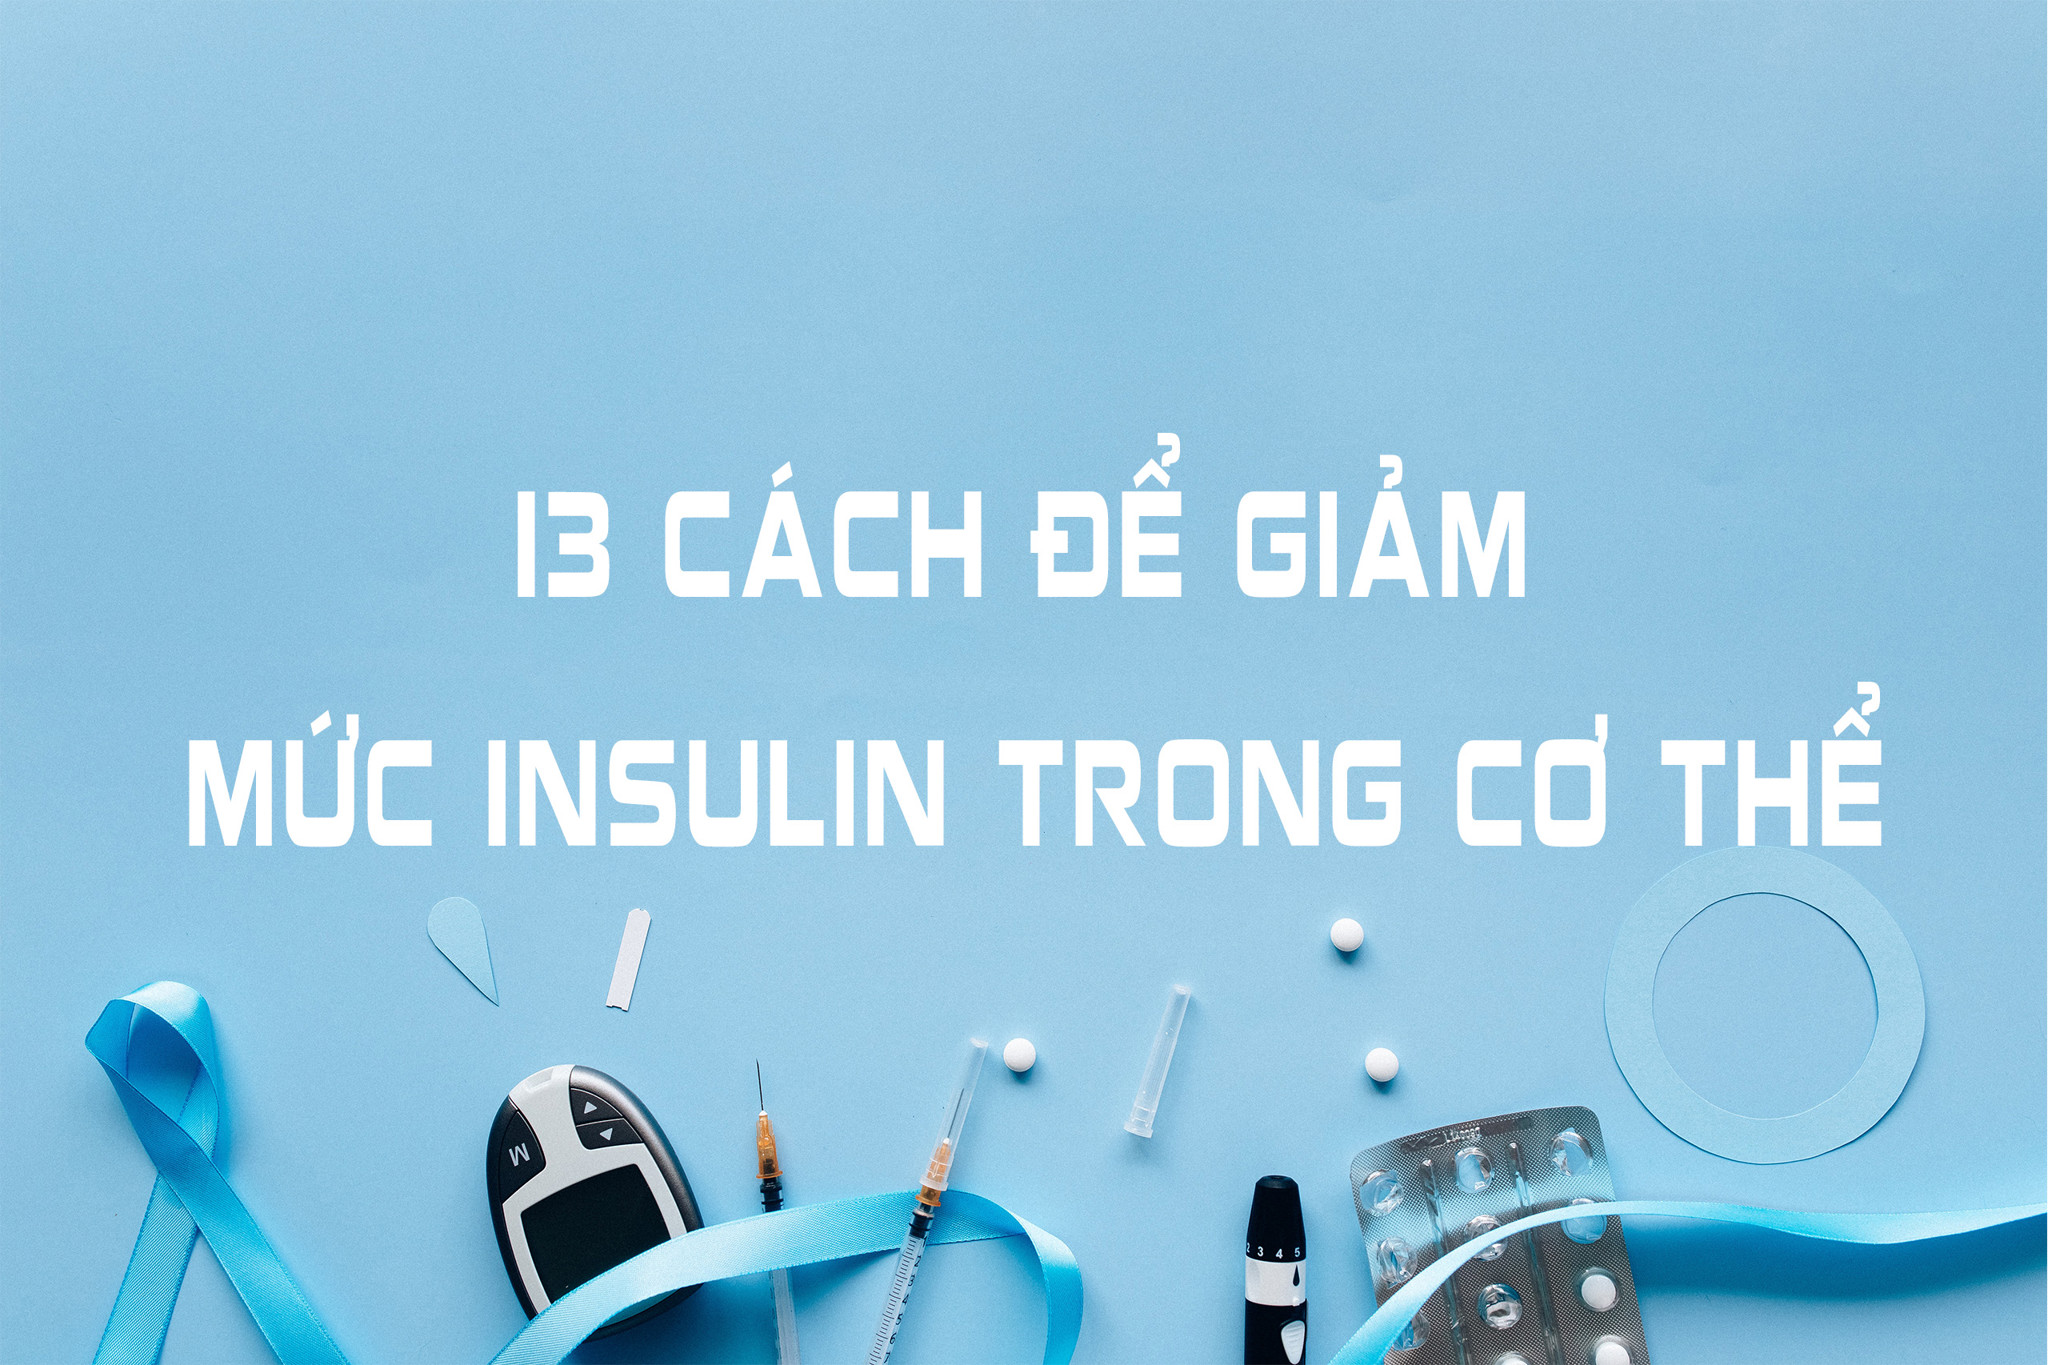 13 cách để giảm mức Insulin trong cơ thể